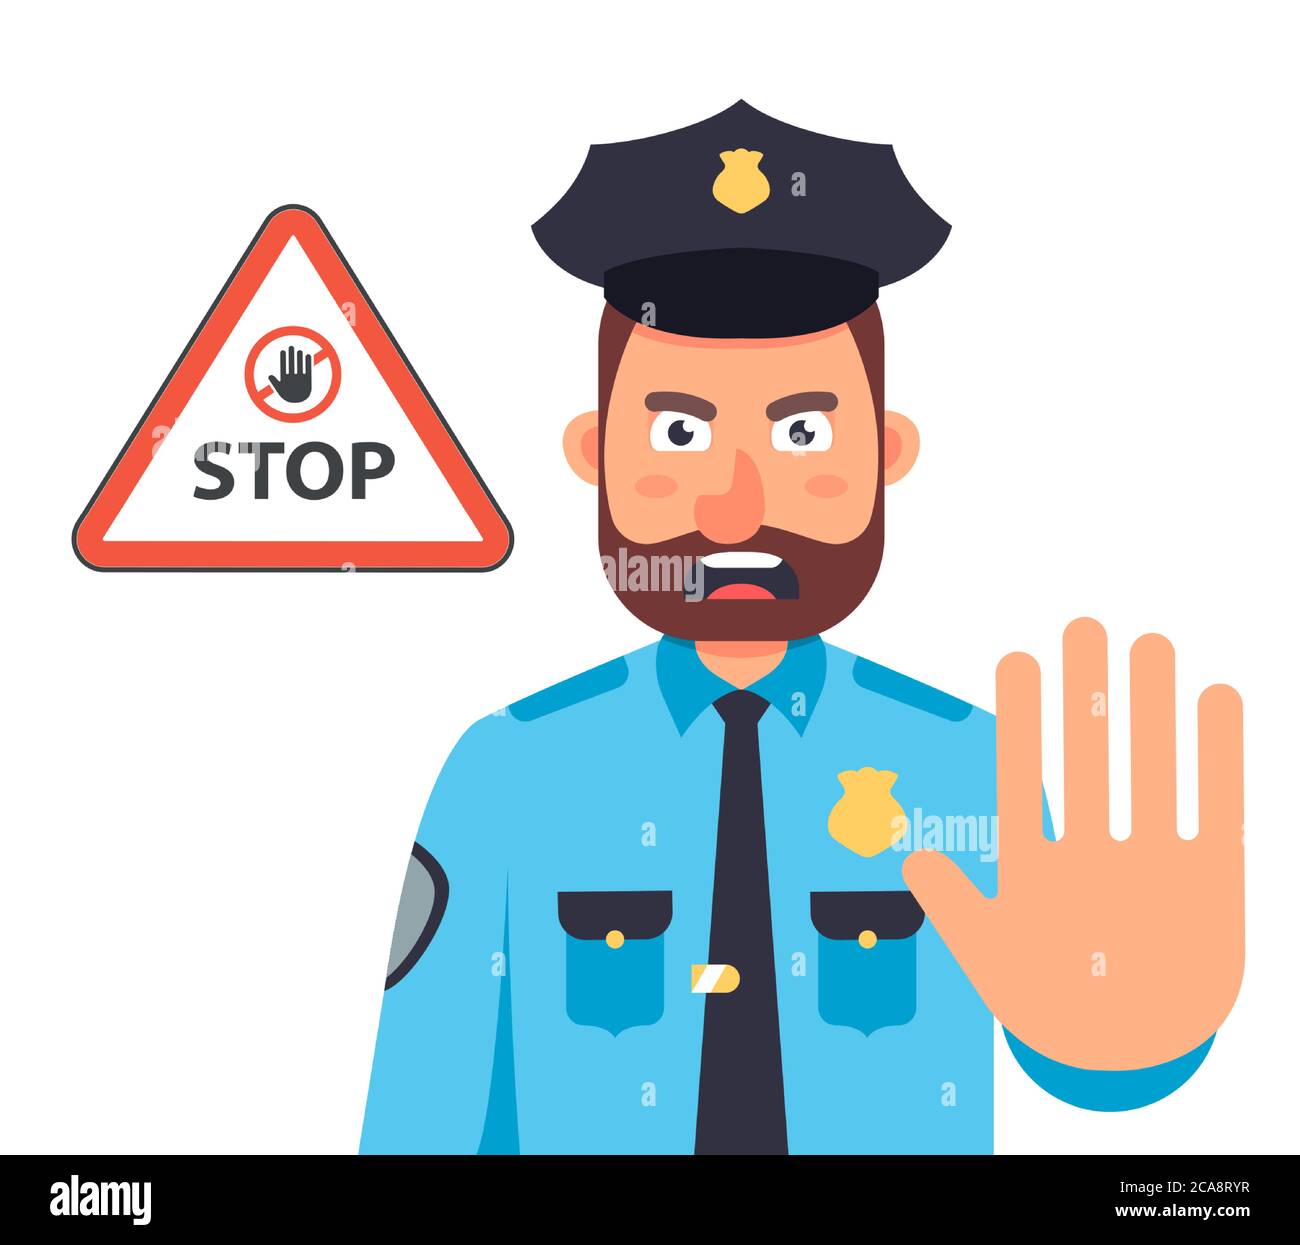 Polizist mit der Hand stoppt die Bewegung. Stop-Zeichen im Dreieck. Vektorgrafik für flache Zeichen. Stock Vektor